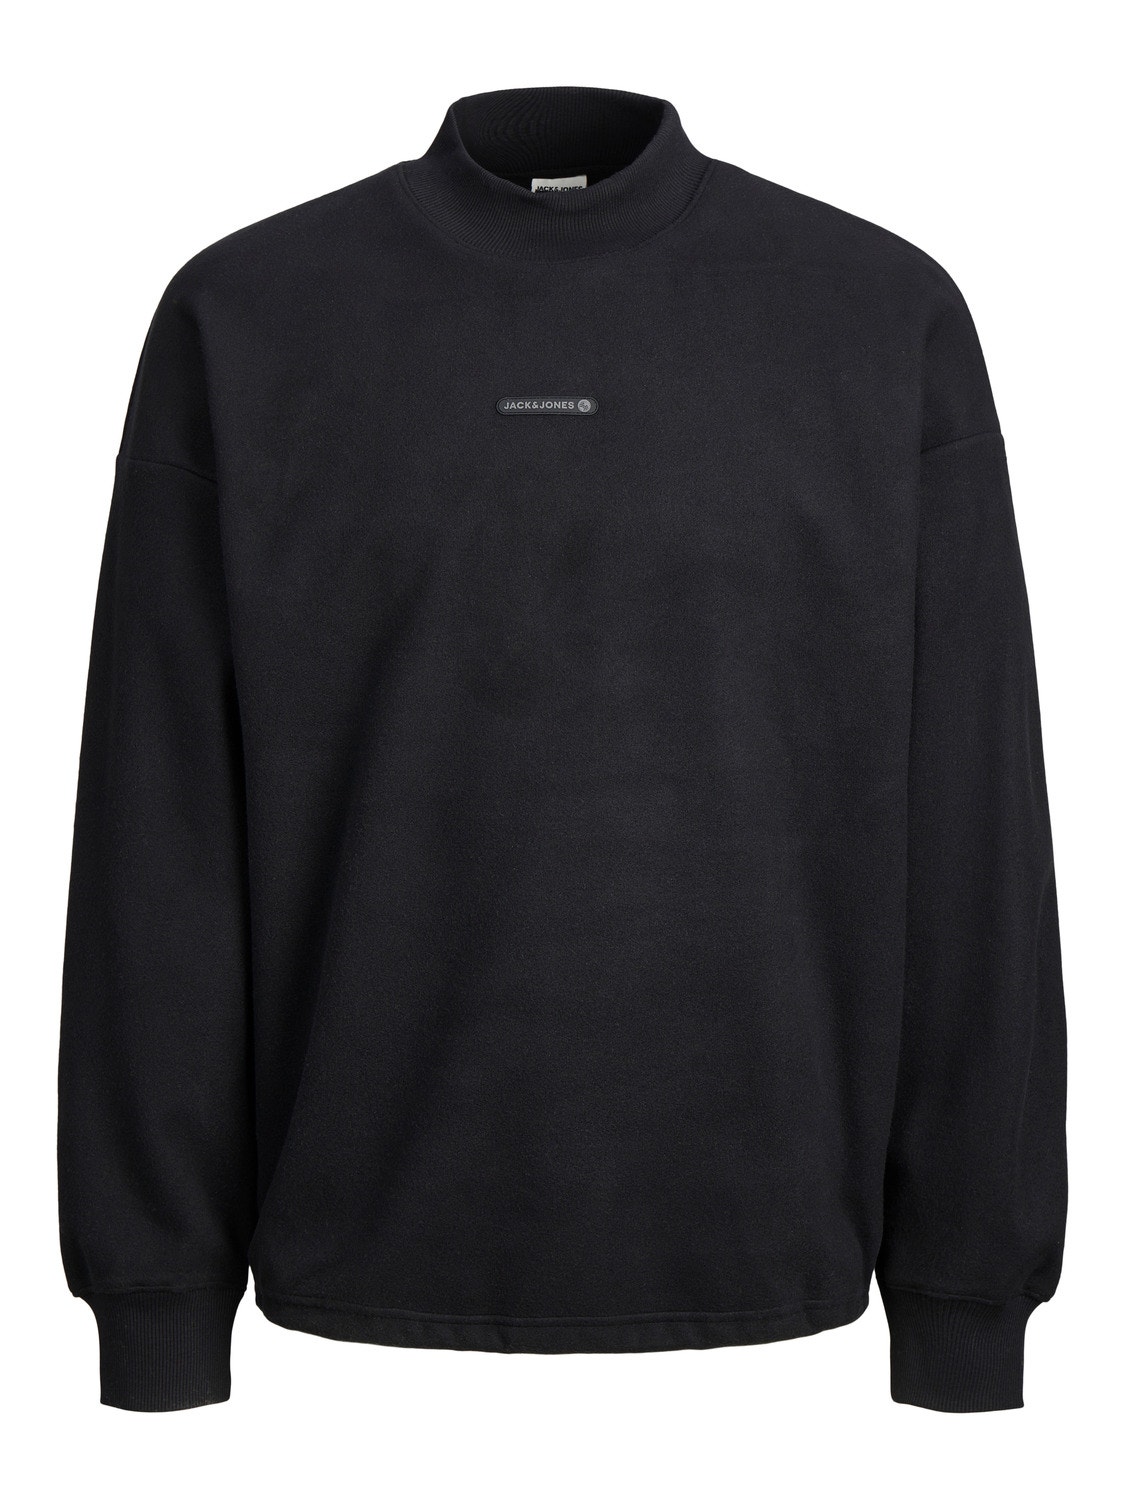 Jack & Jones Logo Crew neck Sweatshirt -Black - 12242194